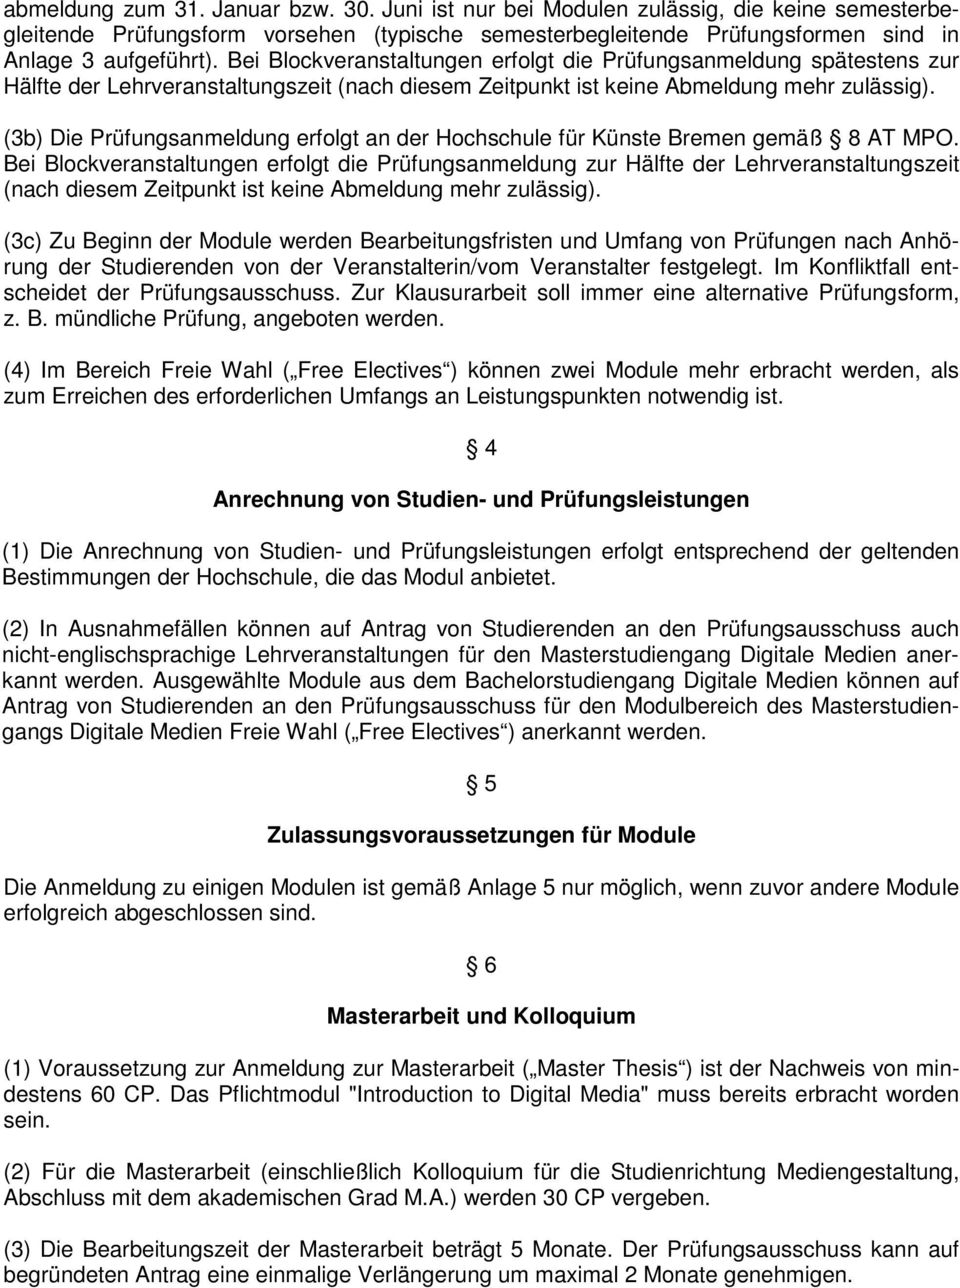 (3b) Die Prüfungsanmeldung erfolgt an der Hochschule für Künste Bremen gemäß 8 AT MPO.